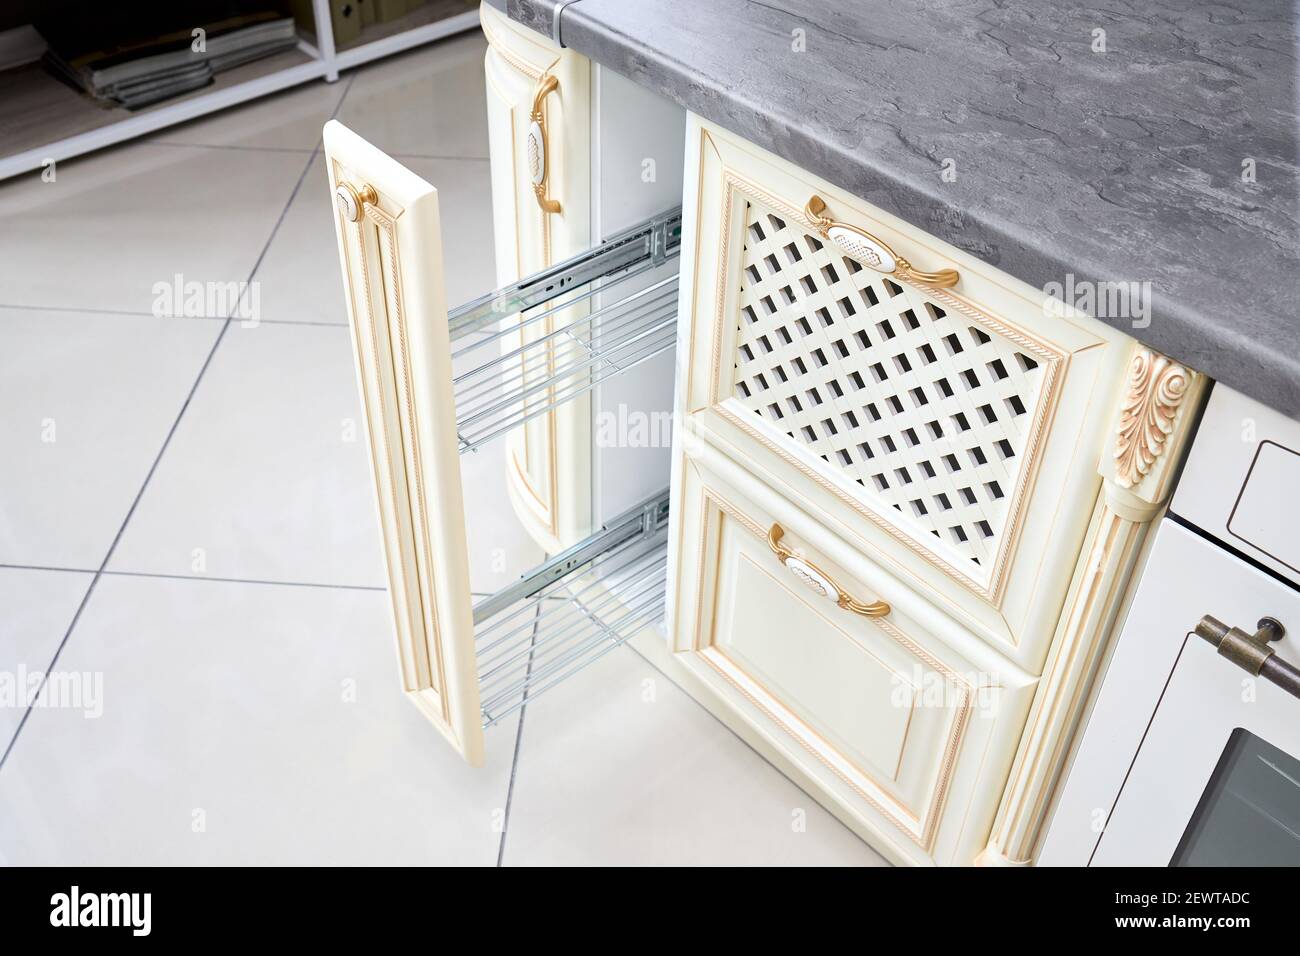 Ziehen Sie die Gewürzregal-Schrank-Füllkammer heraus. Moderne  Küchenausstattung im klassischen Stil mit goldenen Elementen in  beigefarbenen Farben. Vertikale Schublade für Gewürze Stockfotografie -  Alamy